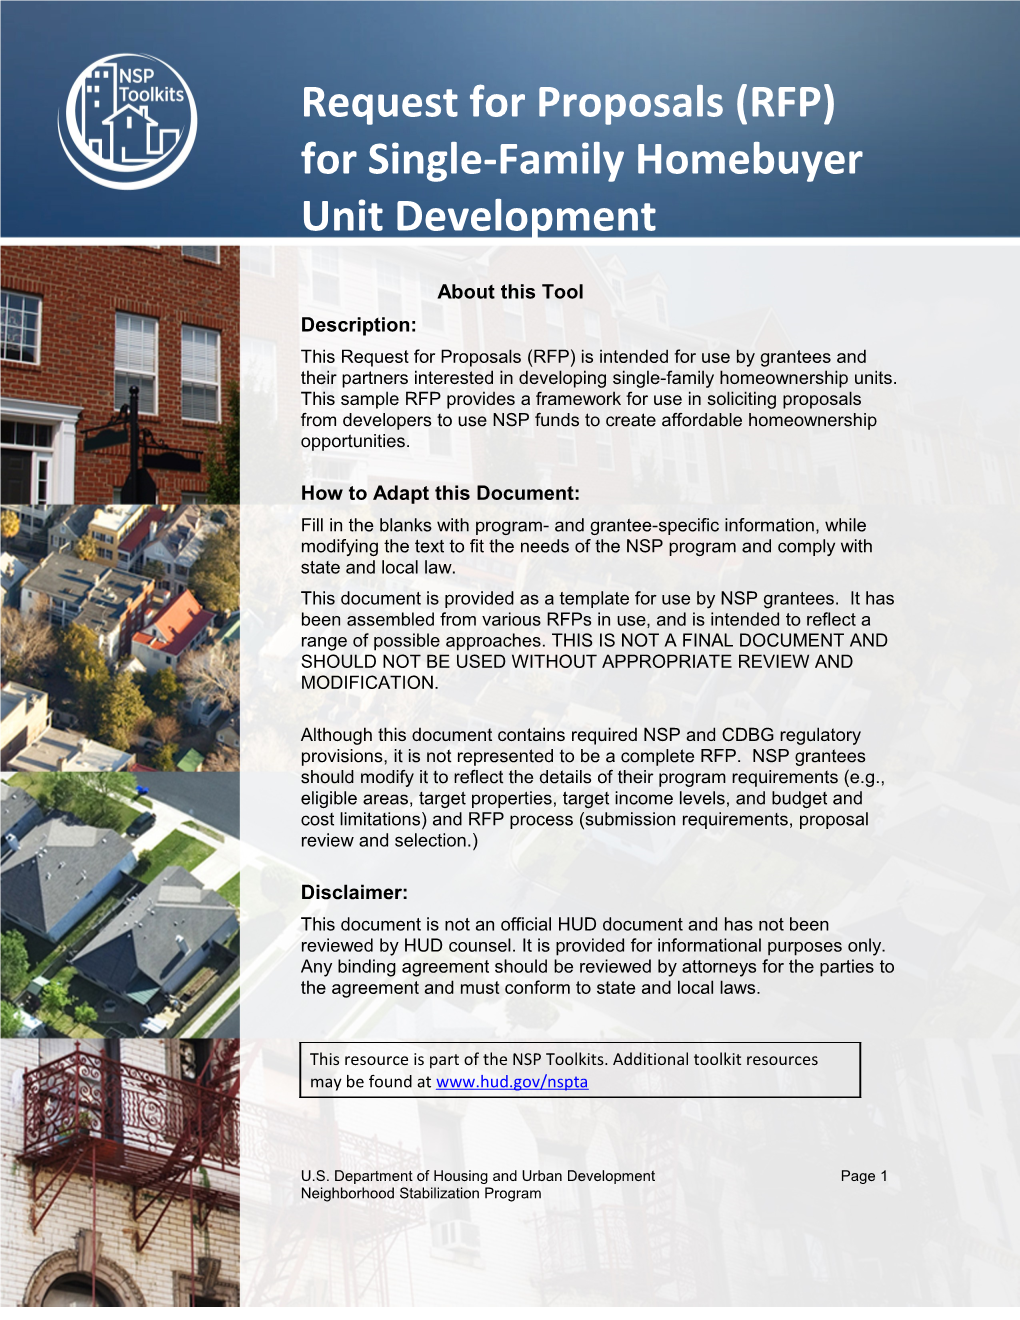 Sample RFP for Single-Family Homebuyer Unit Development